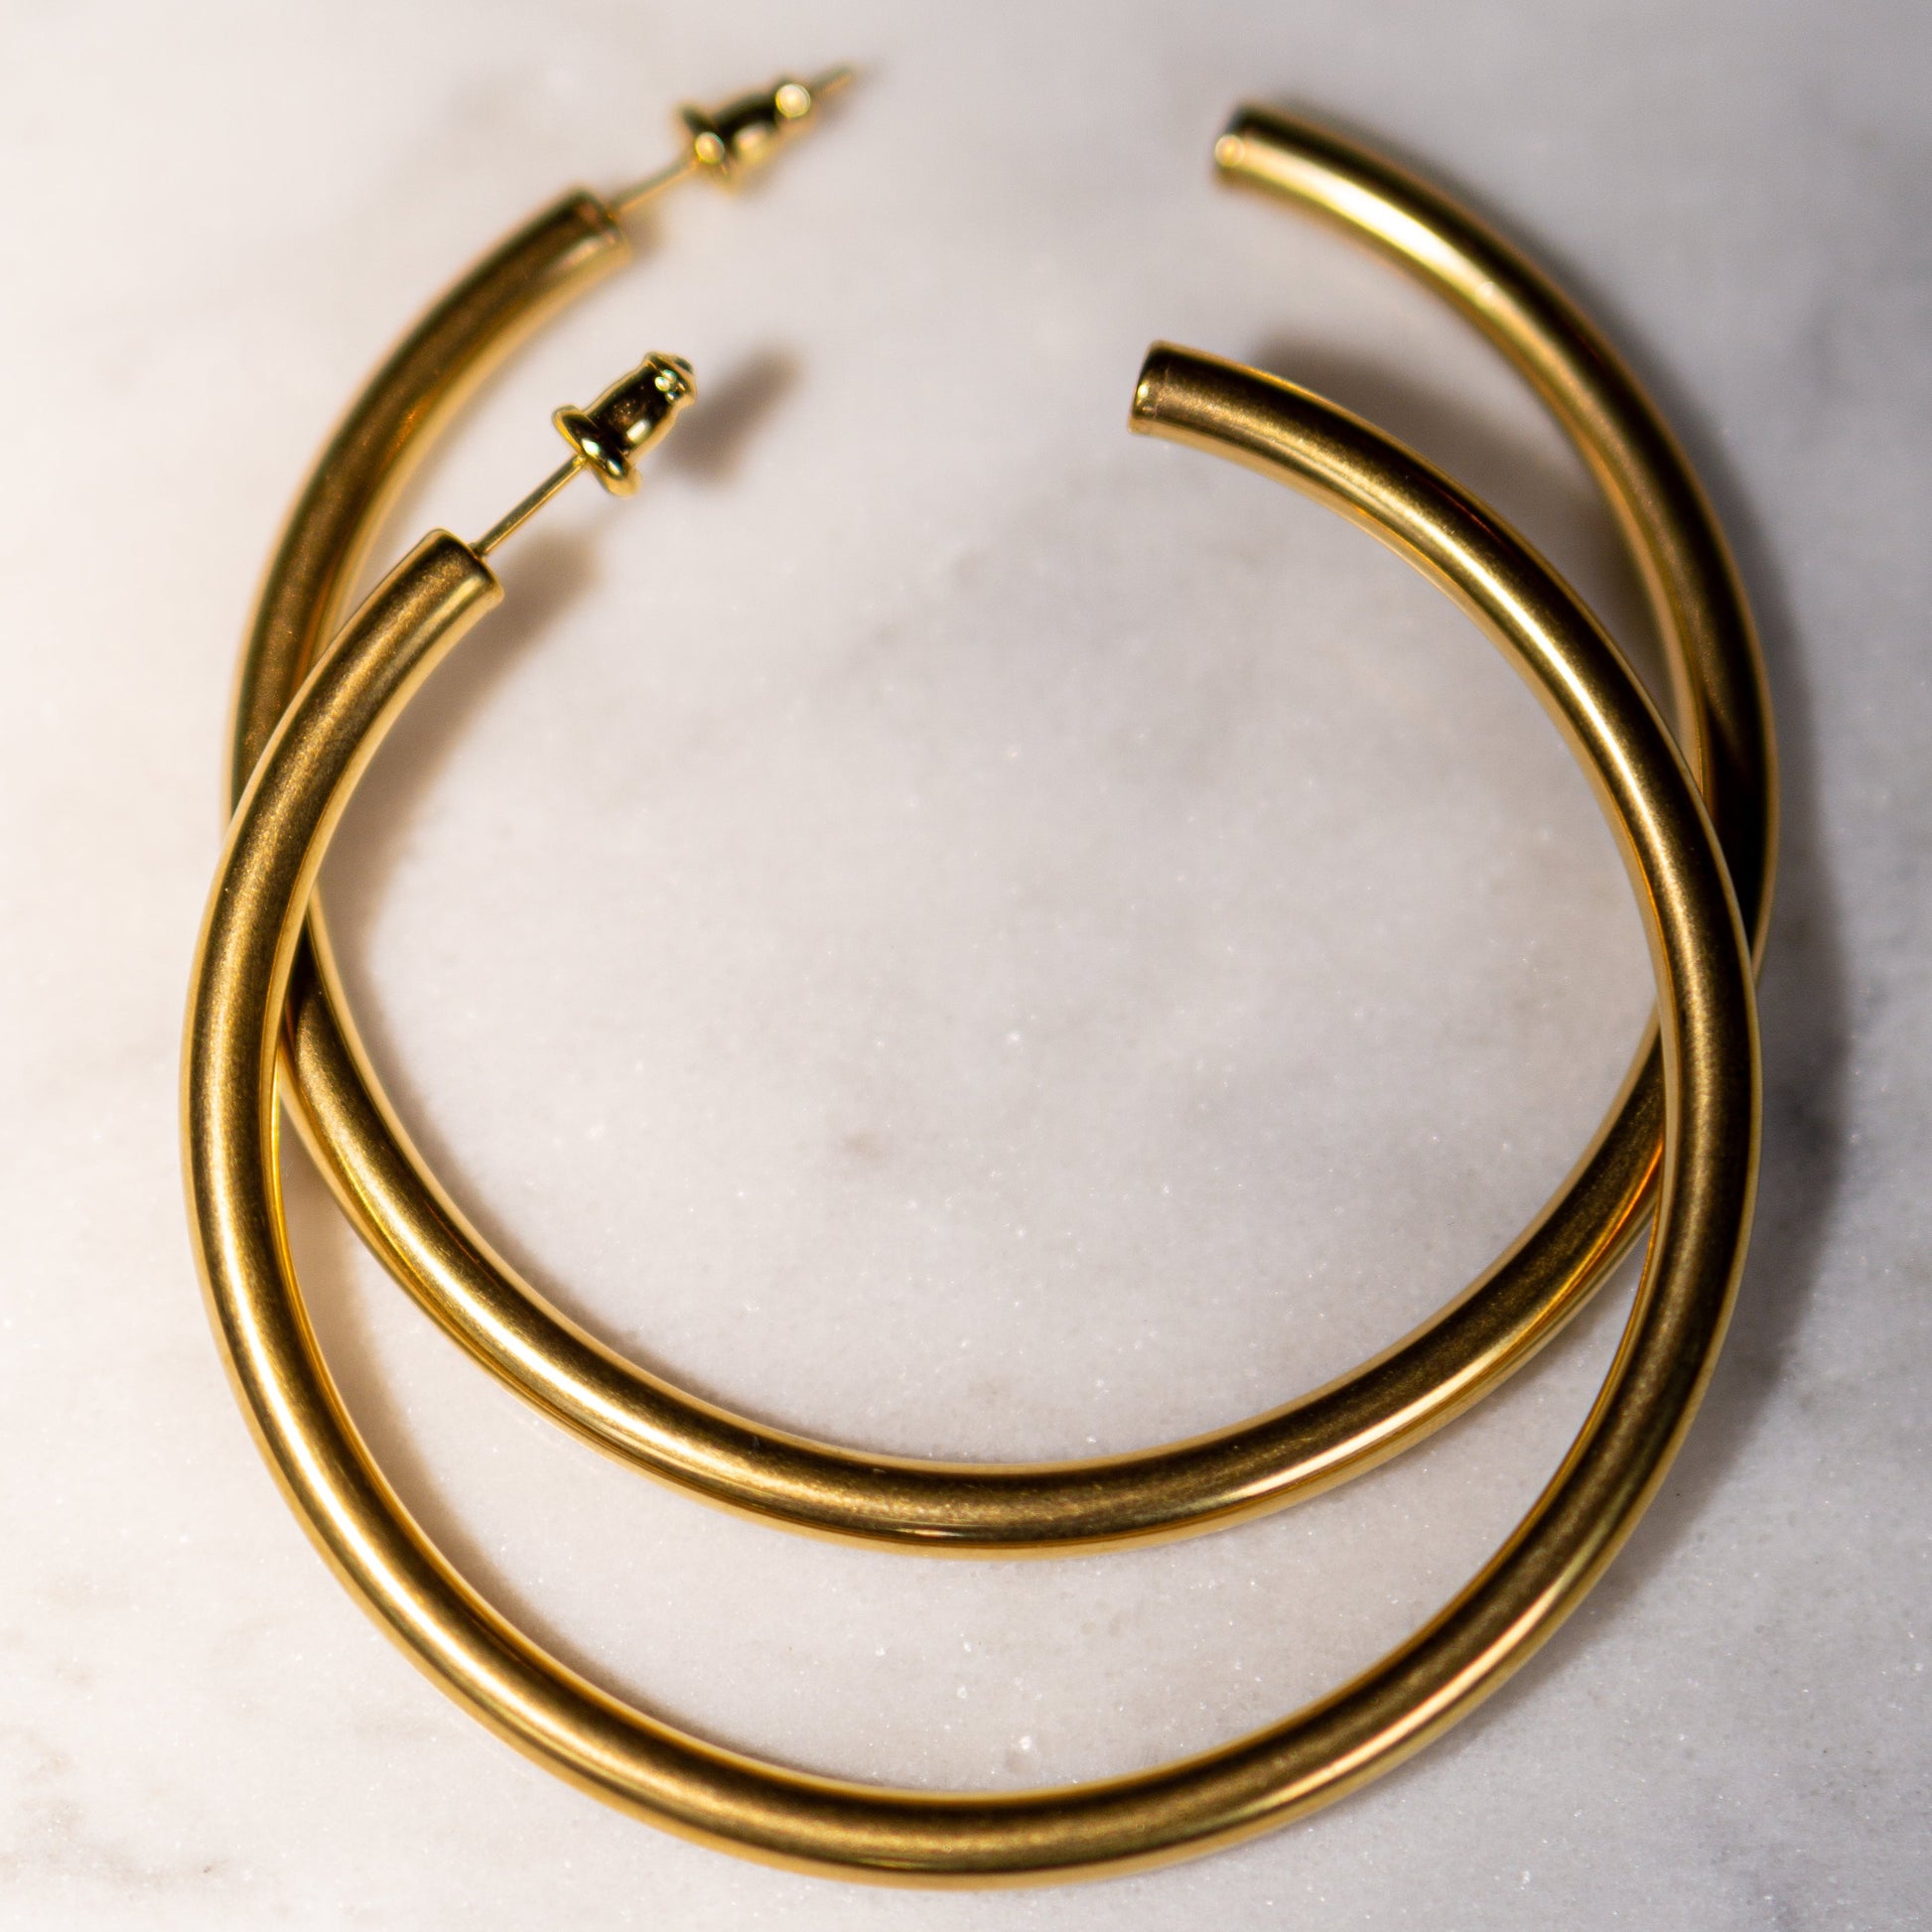 Gold 18k hoop earrings. Simple gold hoop earrings. Gold plated hoop earrings. Affordable hoop earrings. Cute hoop earrings for women or teens. Simple hoop earrings. 